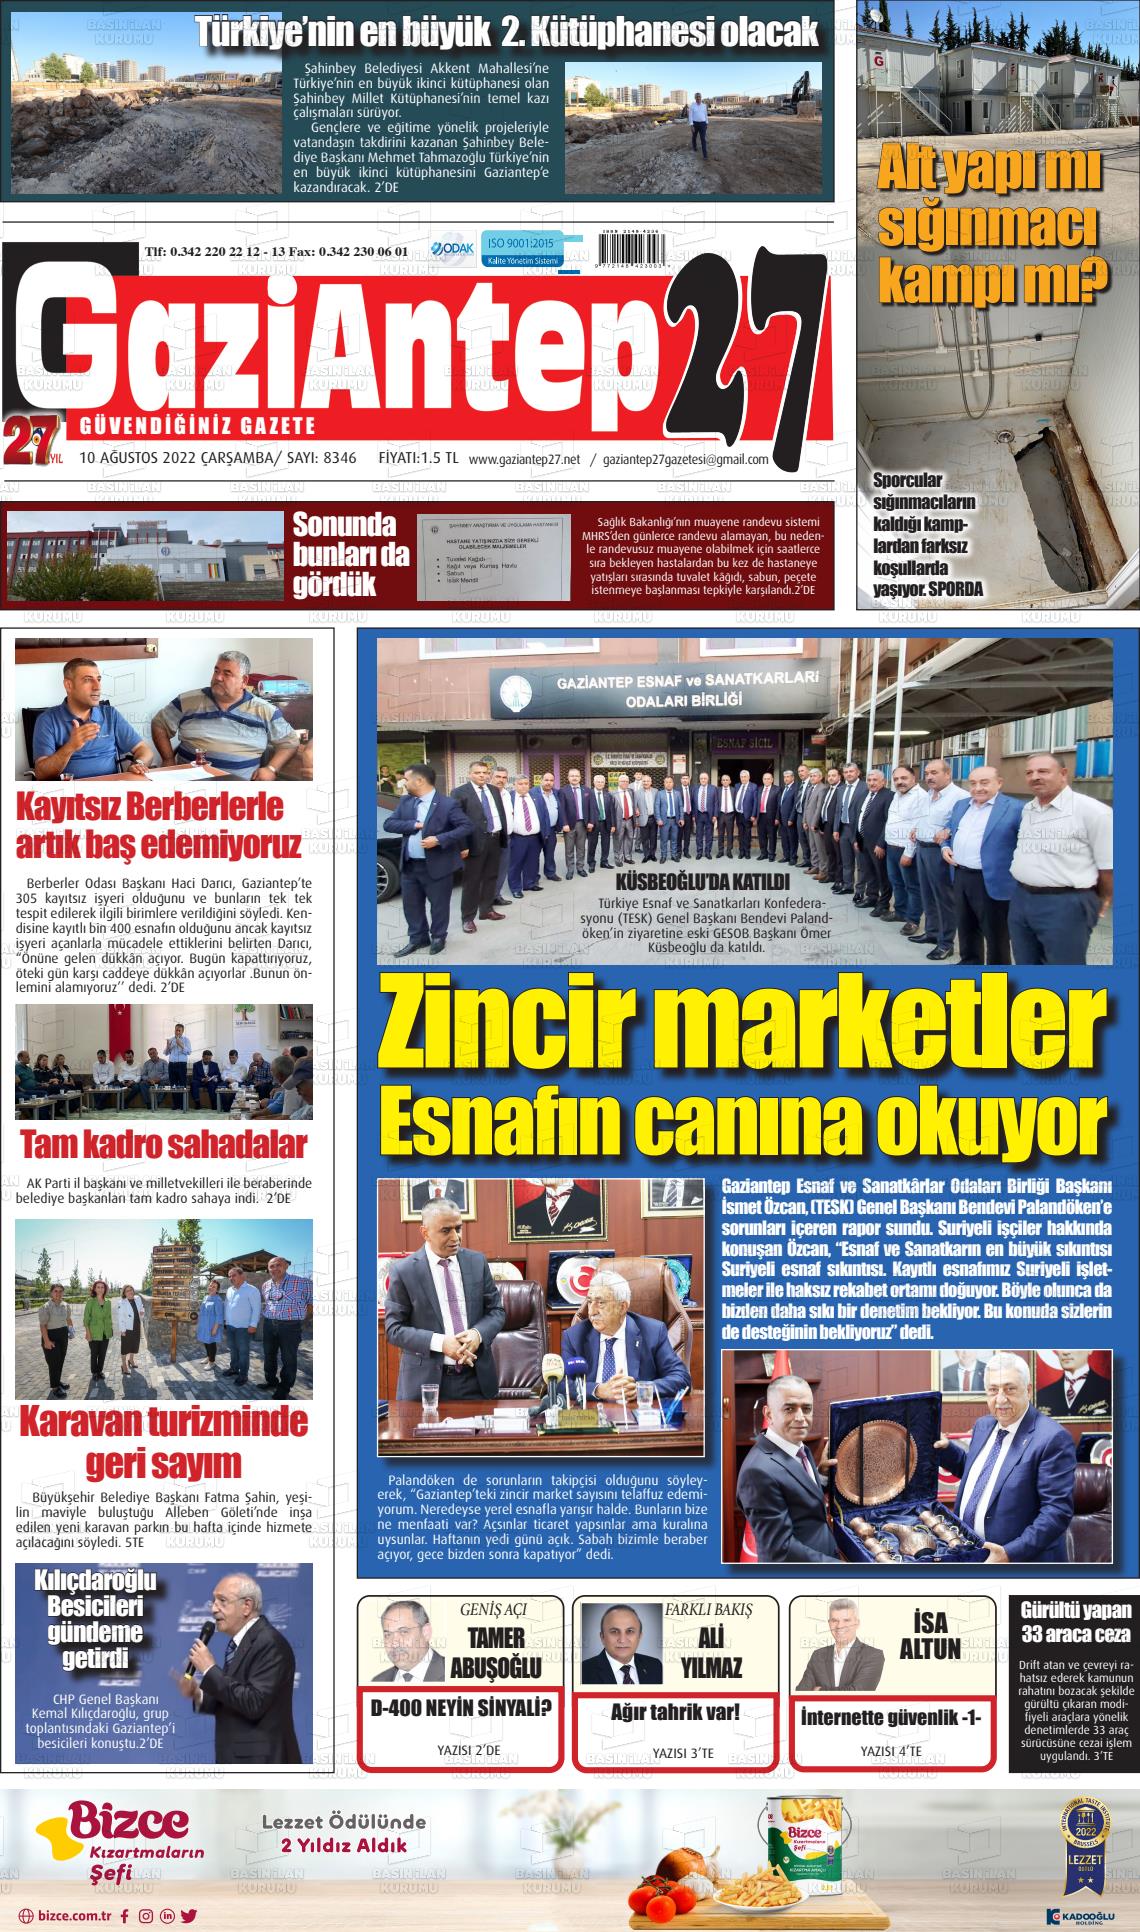 10 Ağustos 2022 Gaziantep 27 Gazete Manşeti